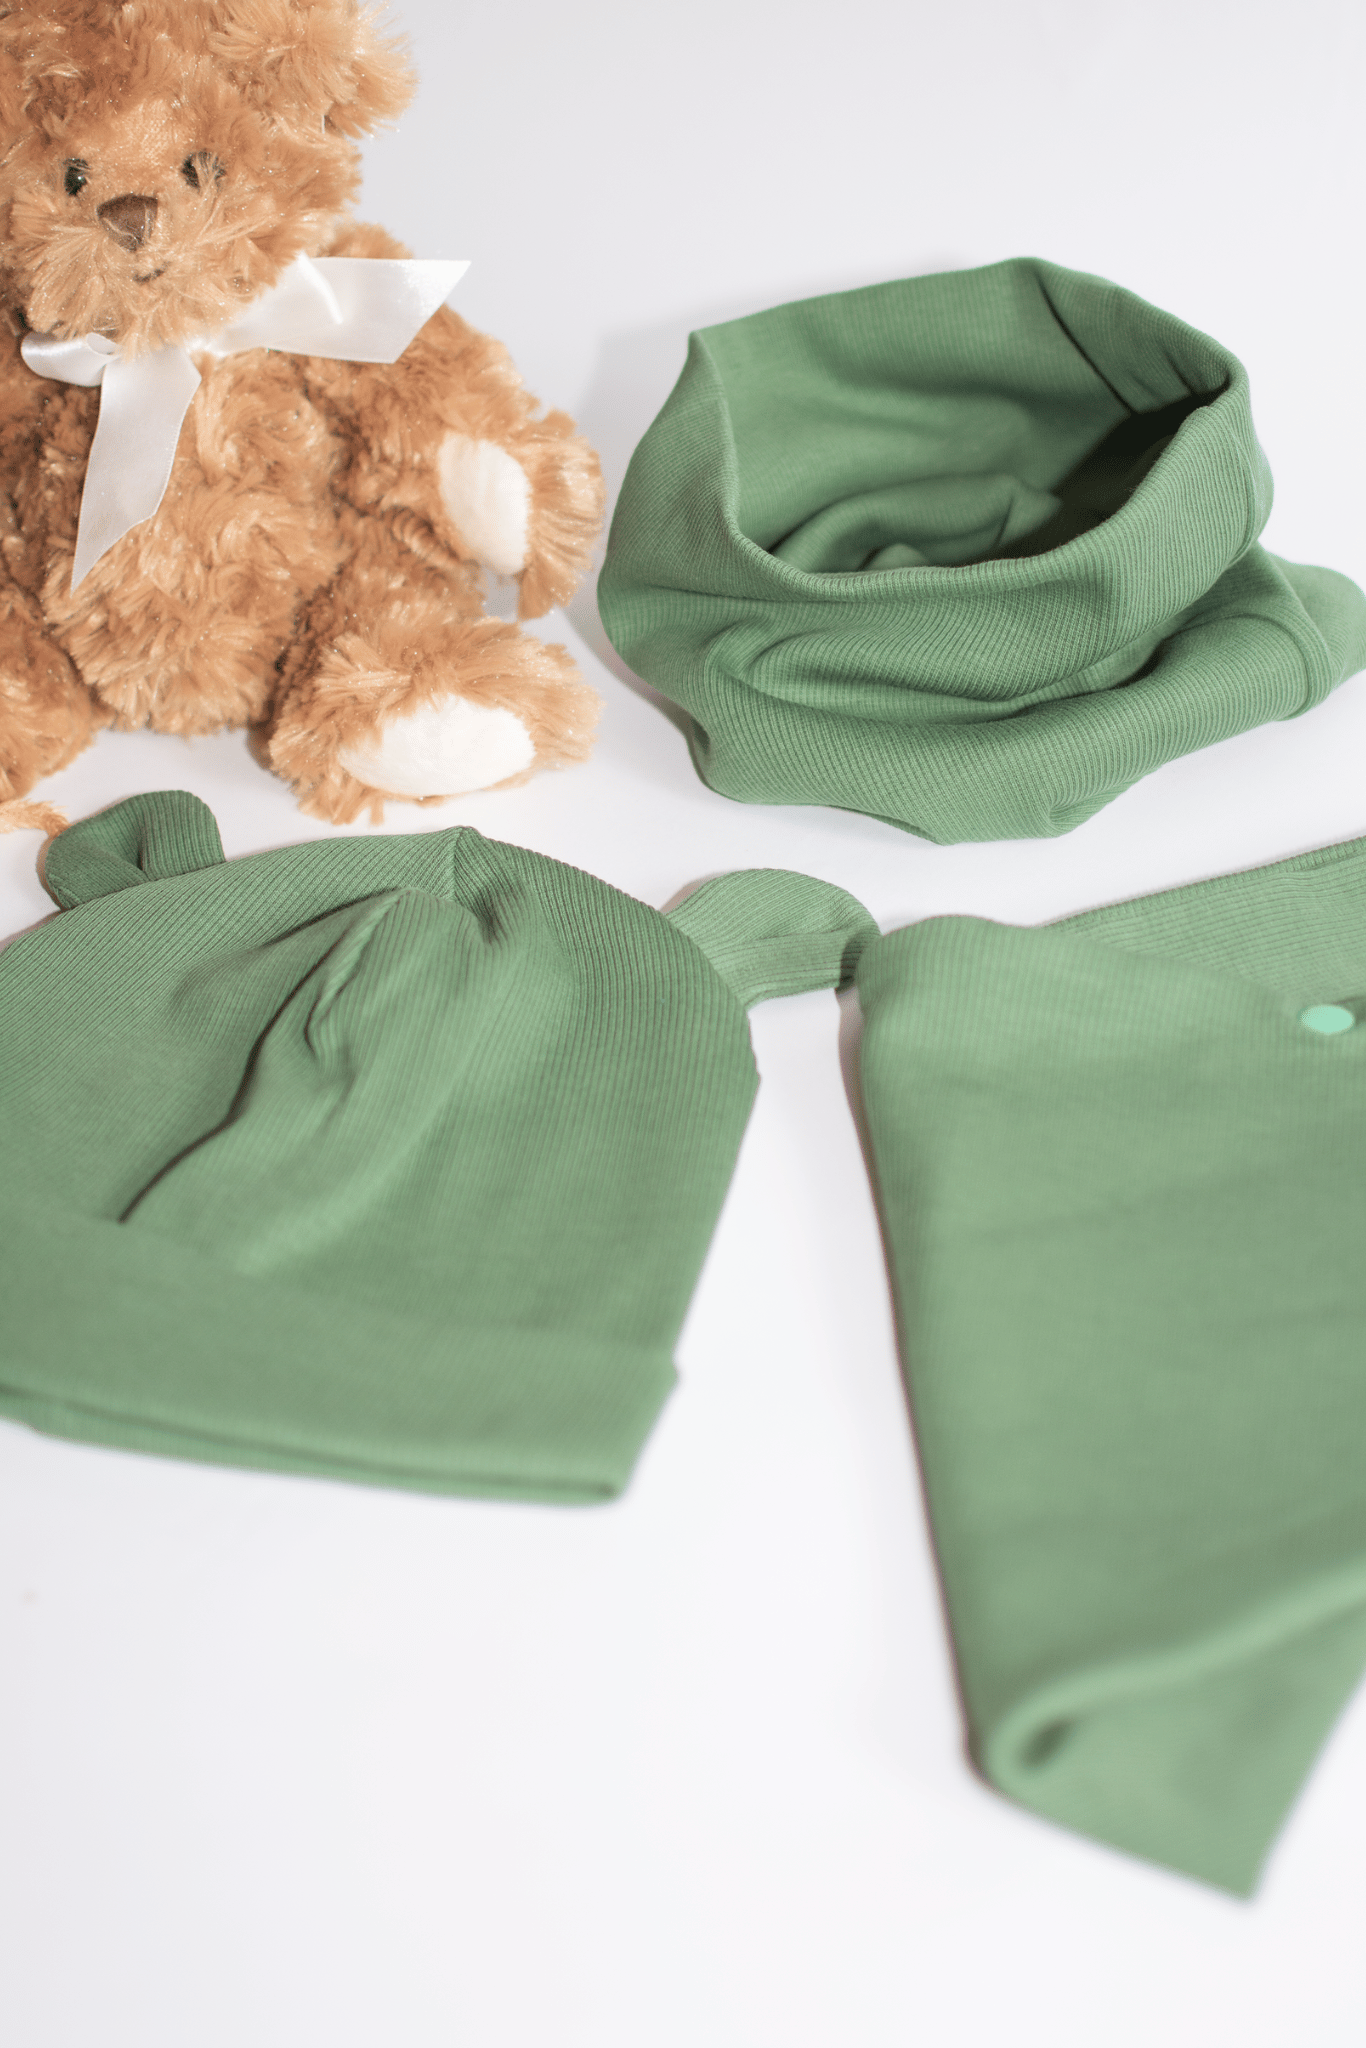 Chaki spalvos RIB kepurės ir šaliko/movos meškiuko komplektai vaikams - Stiliaus detalė